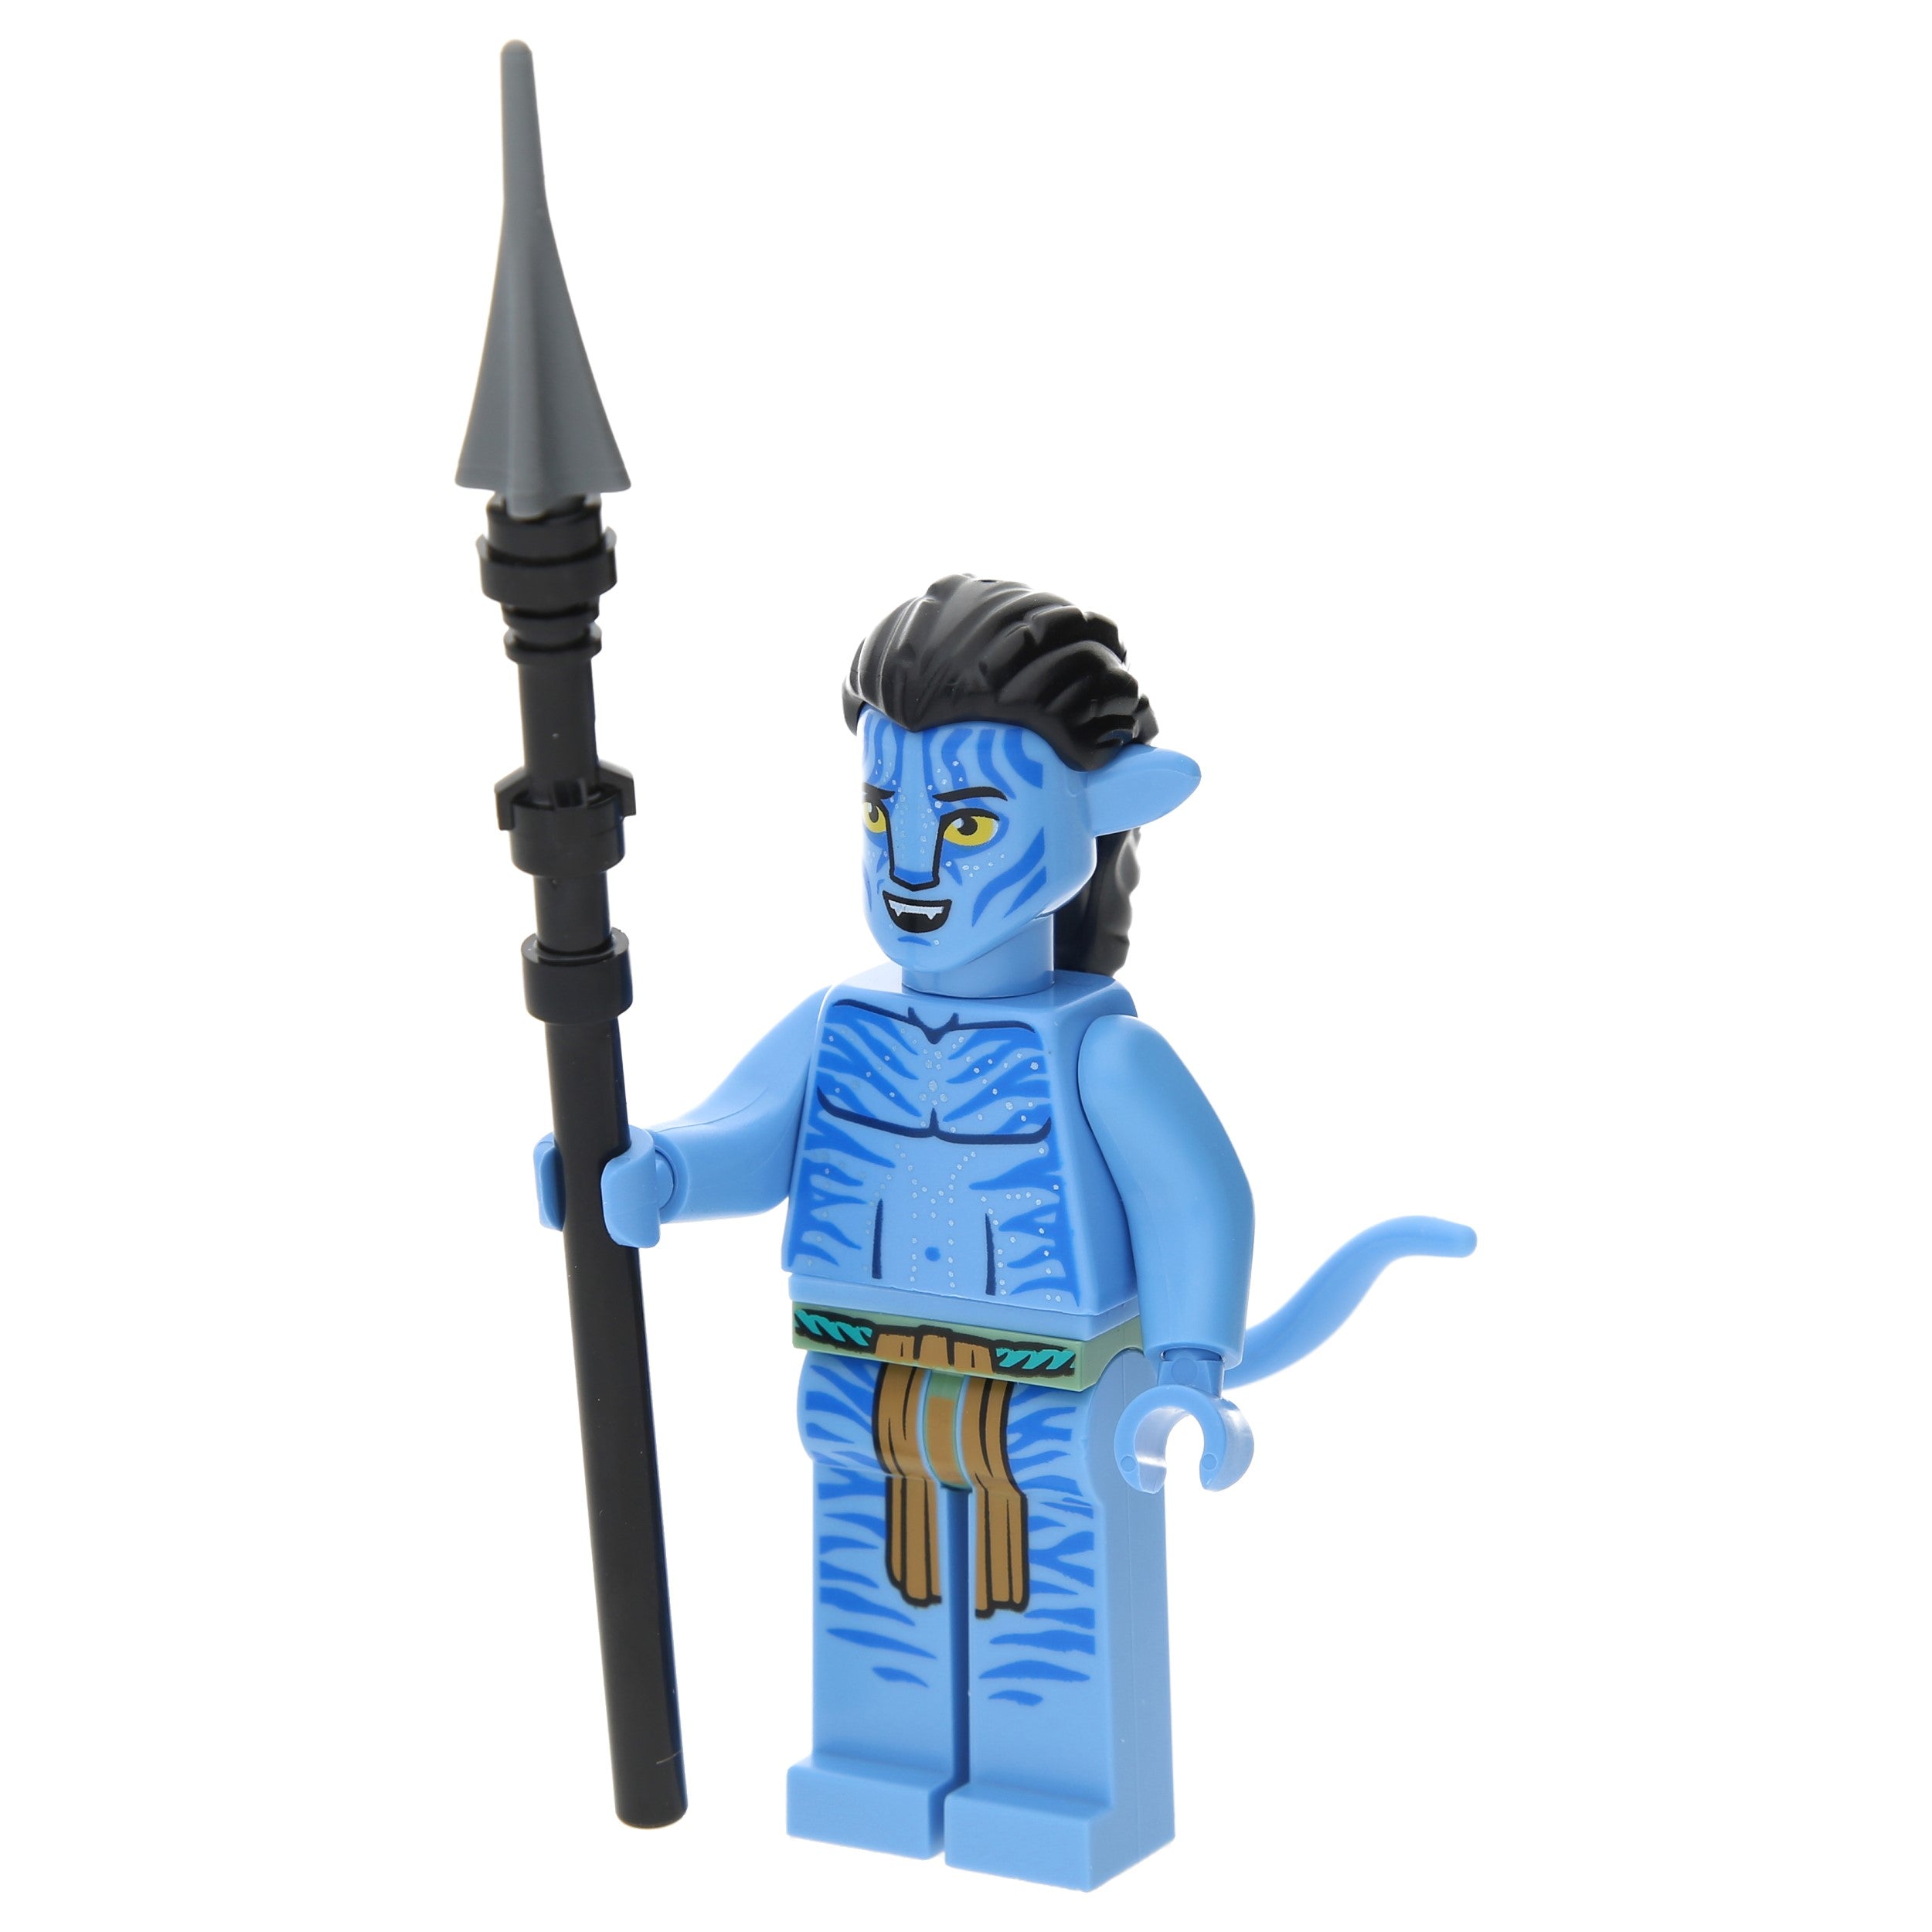 LEGO Avatar Minifiguren - Jake Sully mit Speer - avt013 - Avatar: The Way of Water